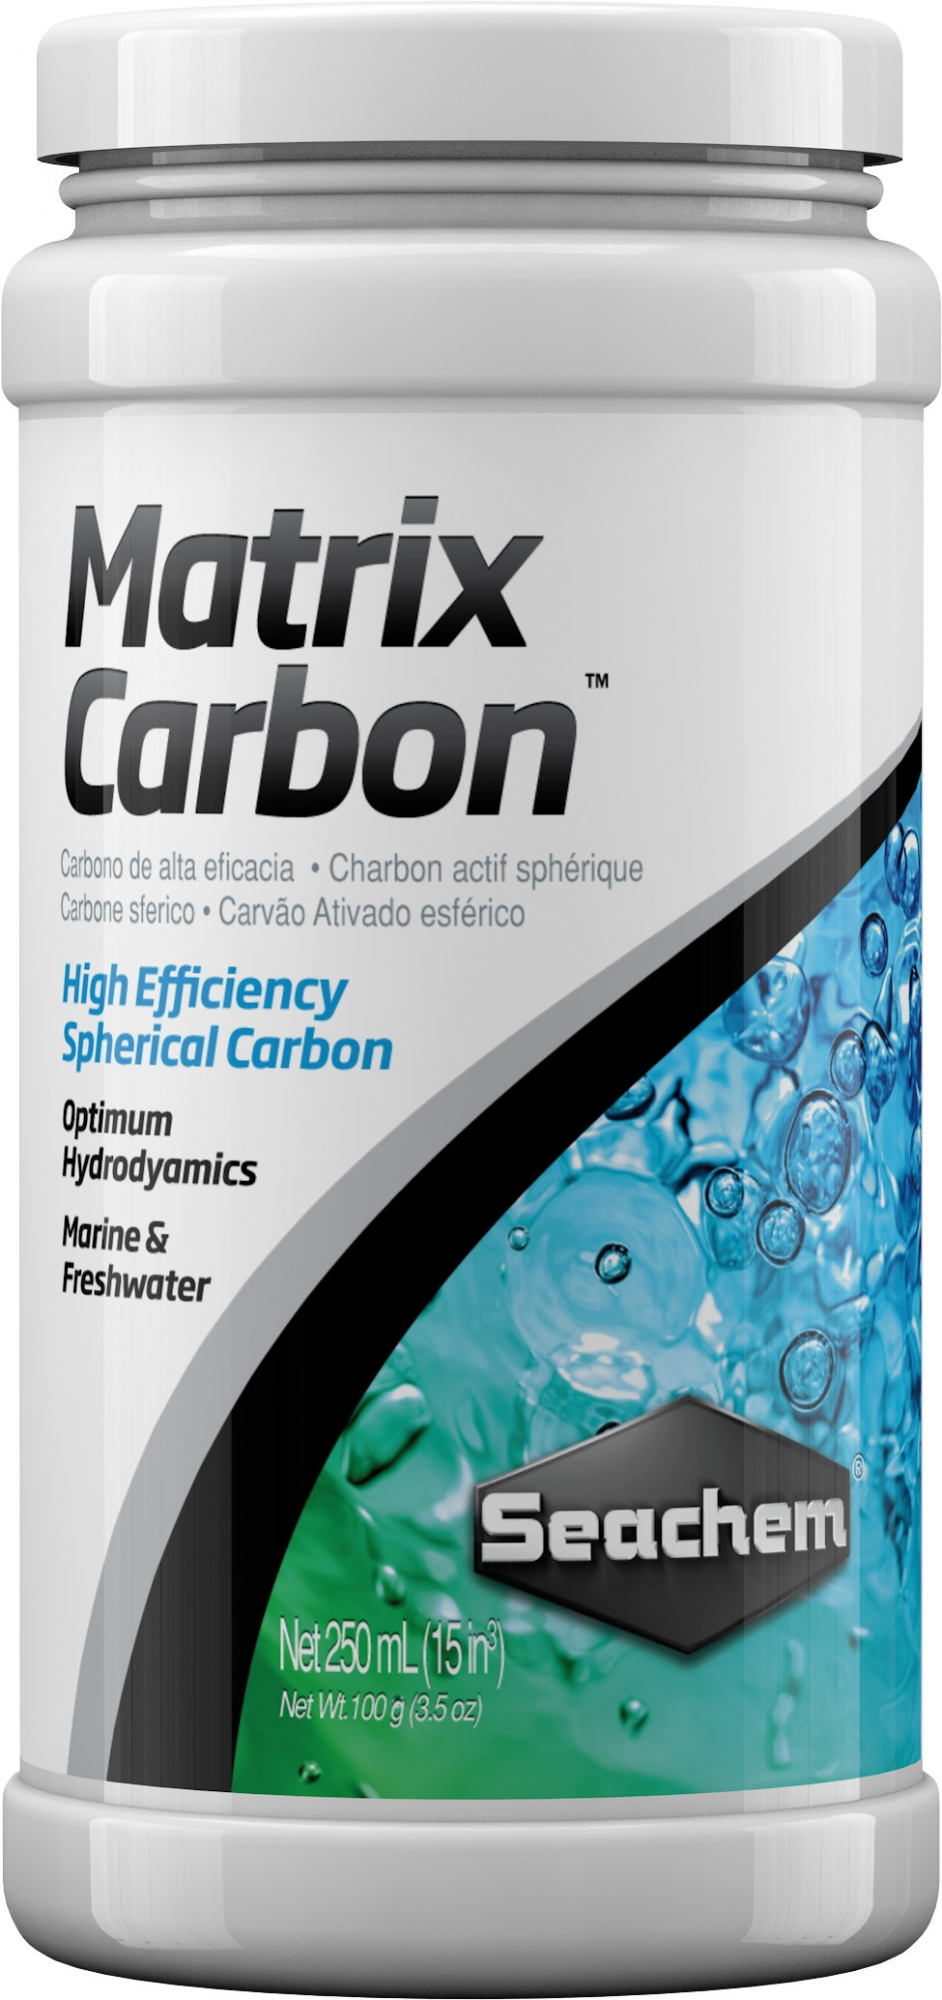 Matrix Carbon carbone attivo di qualità superiore